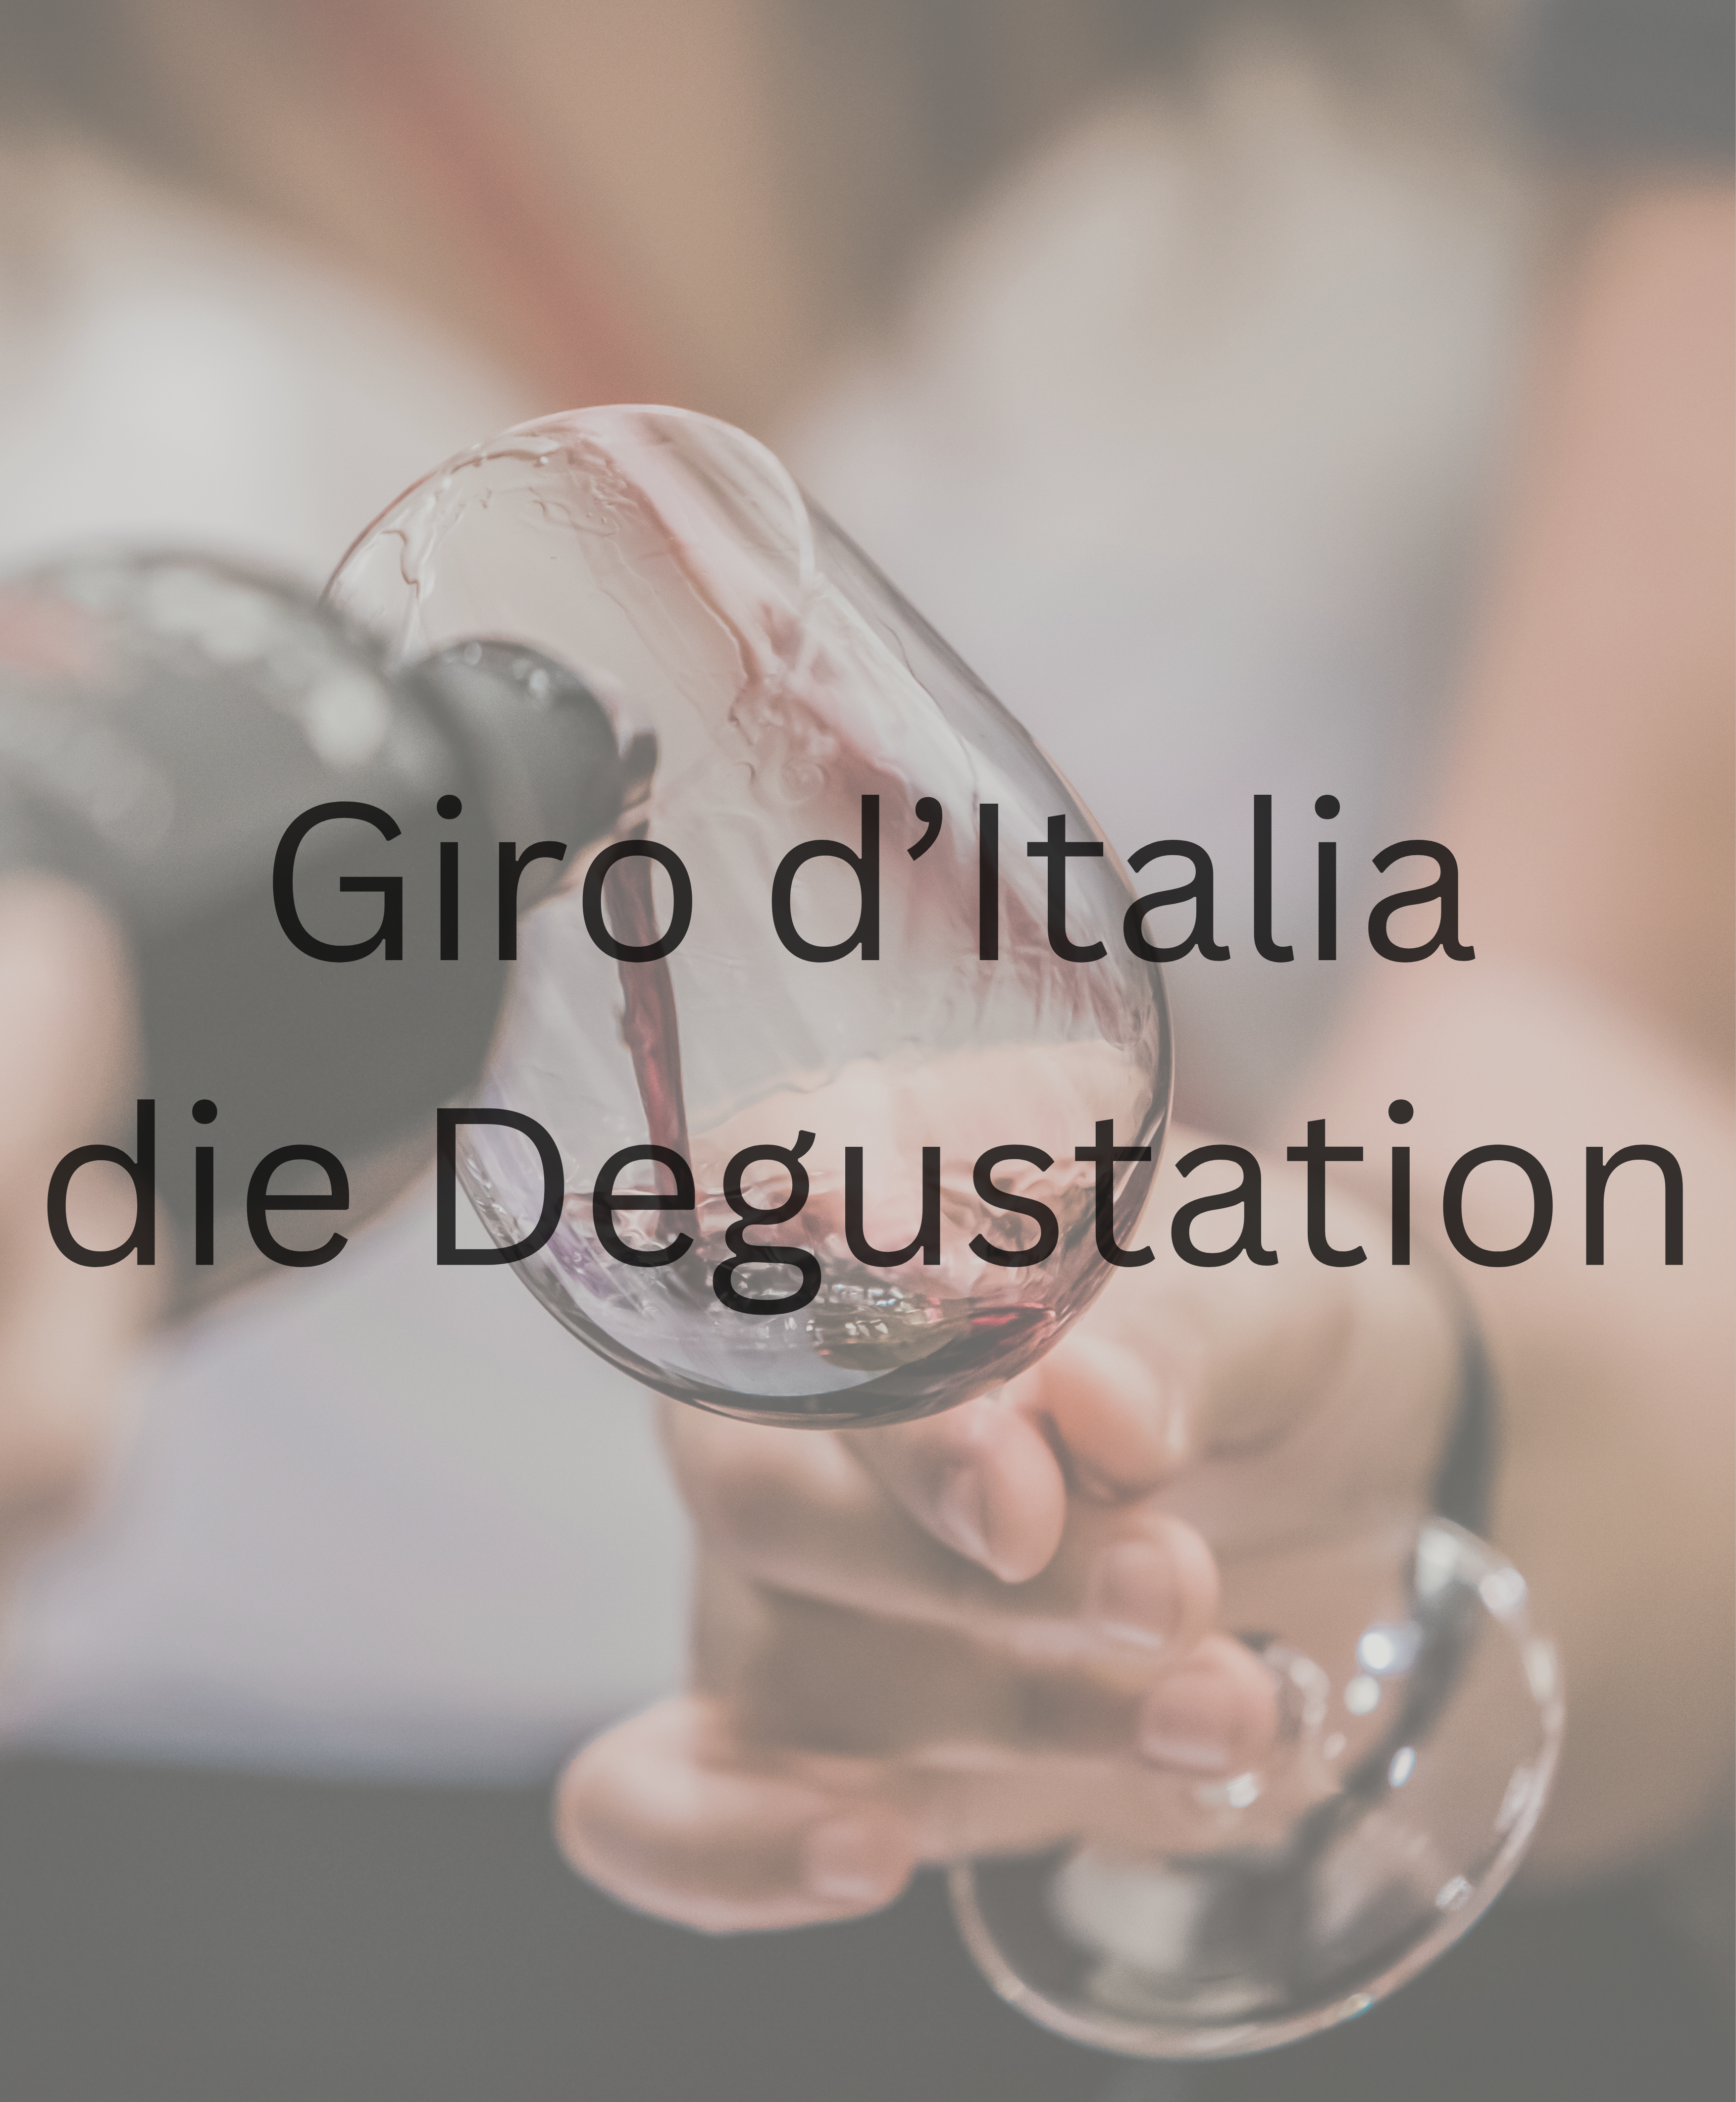 La degustazione a Zurigo, Berna, Lucerna e San Gallo: Giro d'Italia